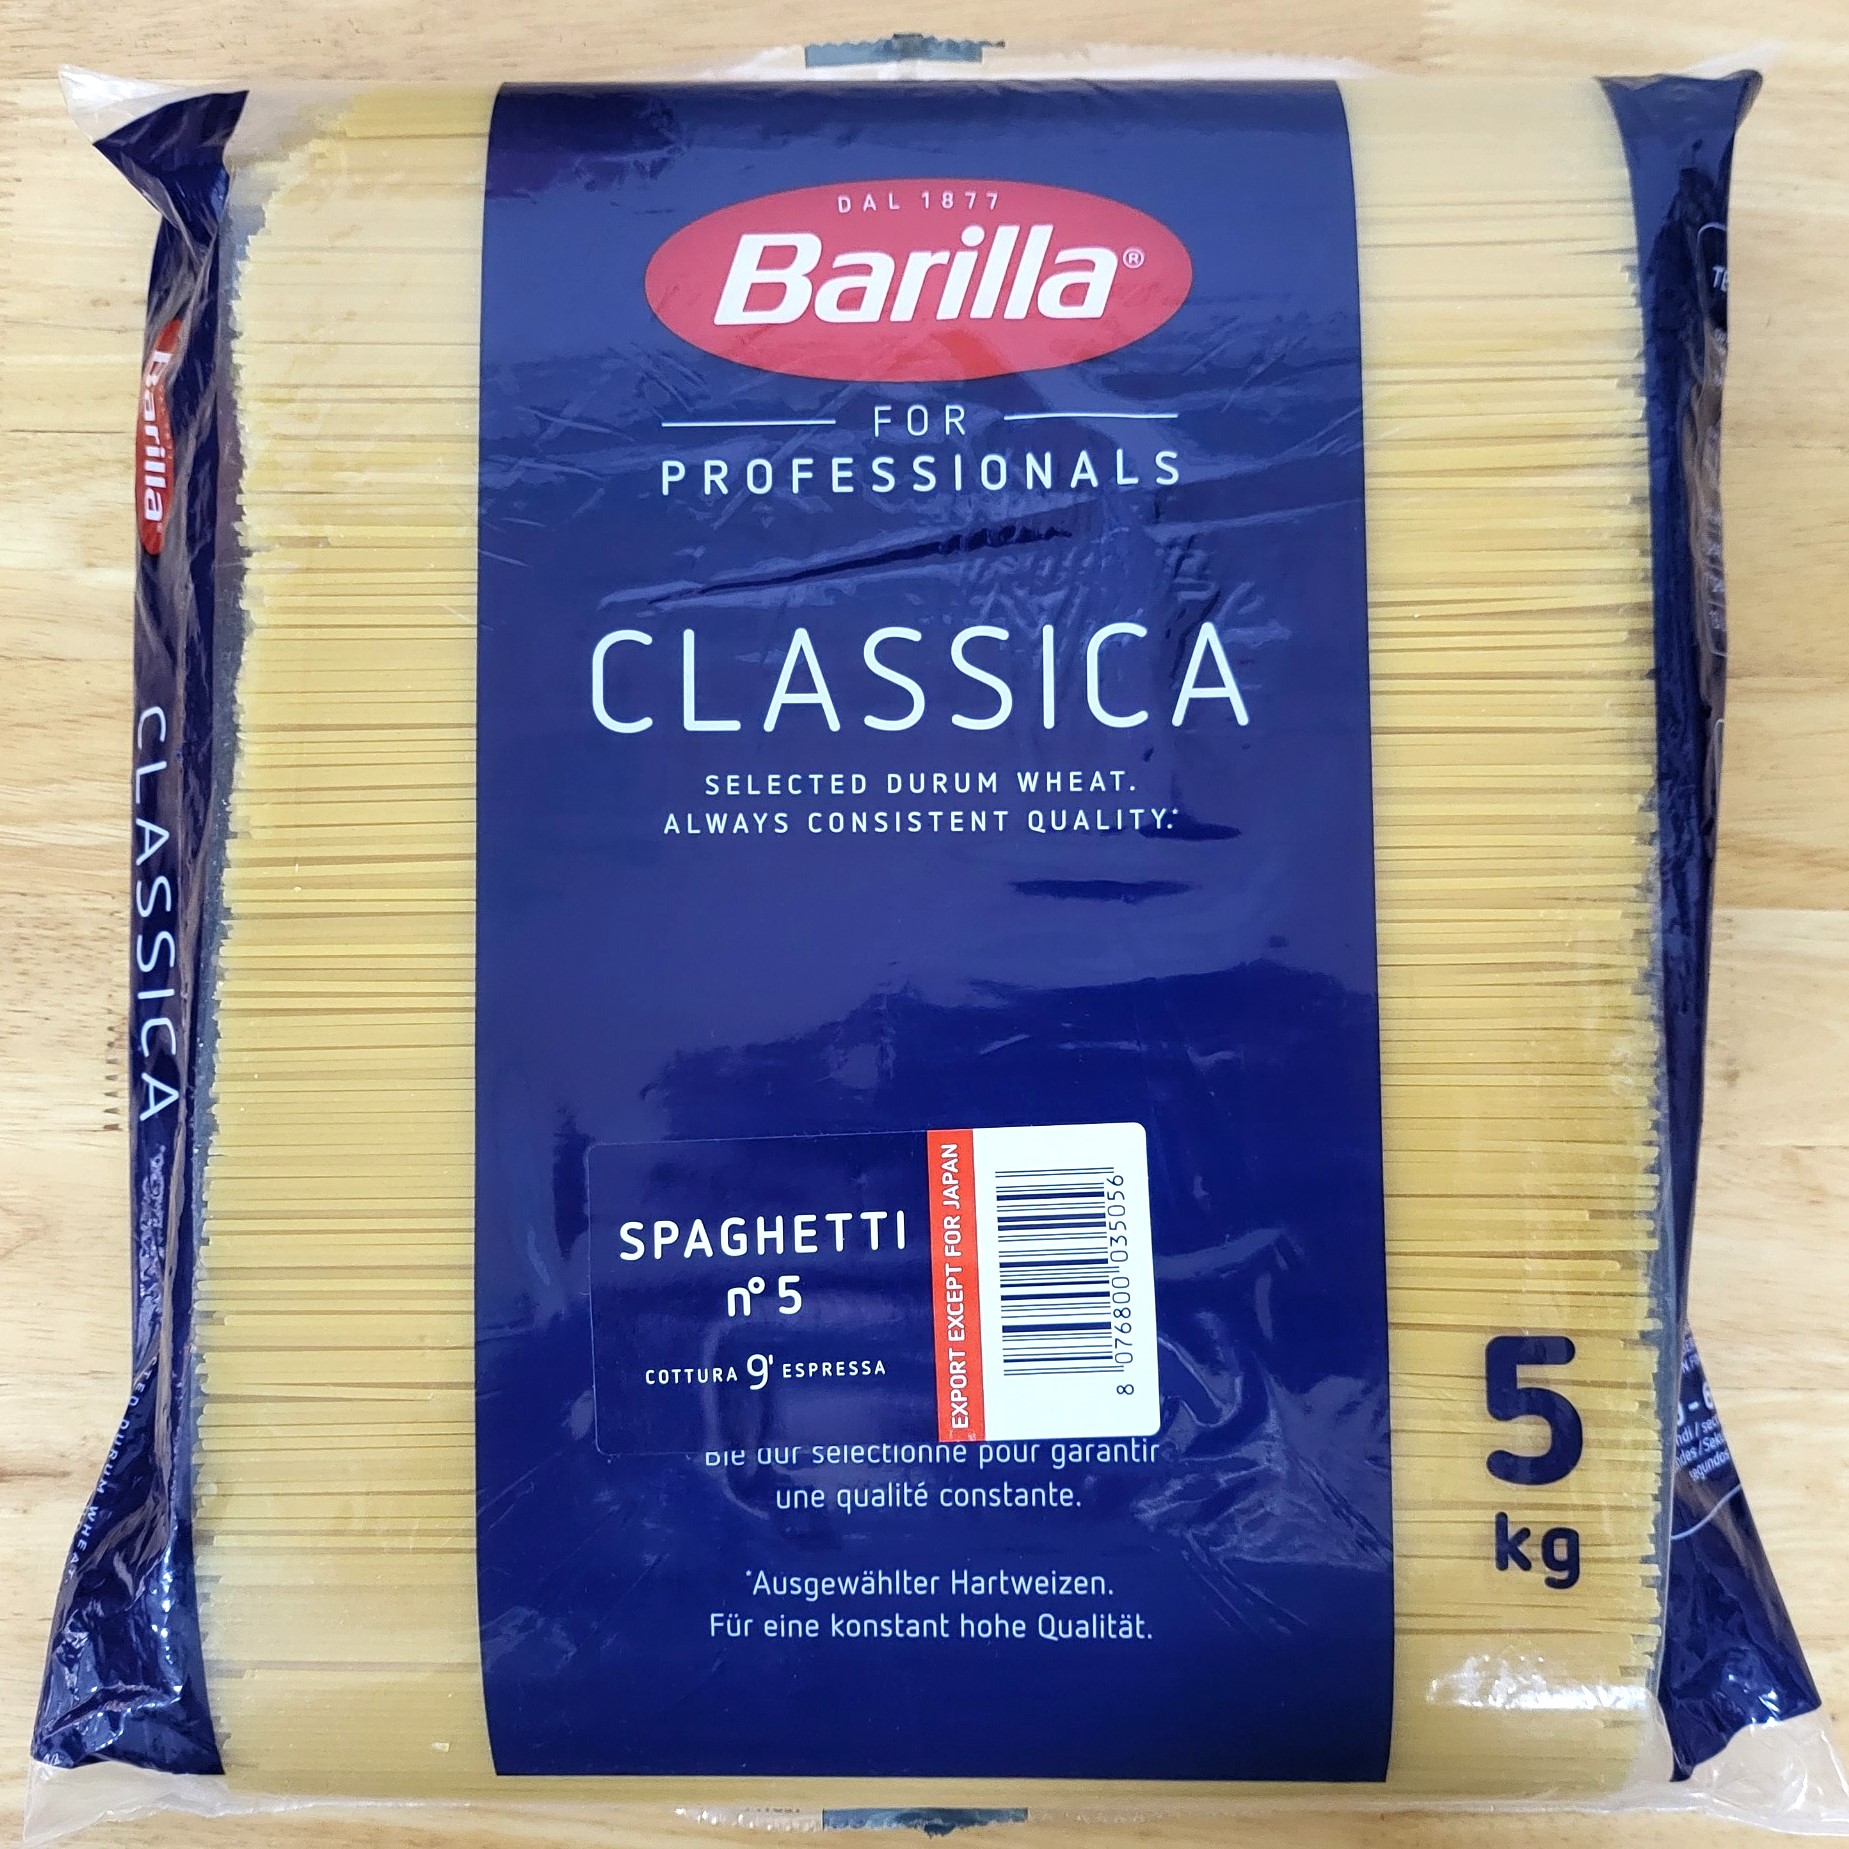 TÚI LỚN 5 Kg SỐ 5 MÌ SỢI HÌNH ỐNG CÁC CỠ BARILLA No 5 Spaghetti Pasta